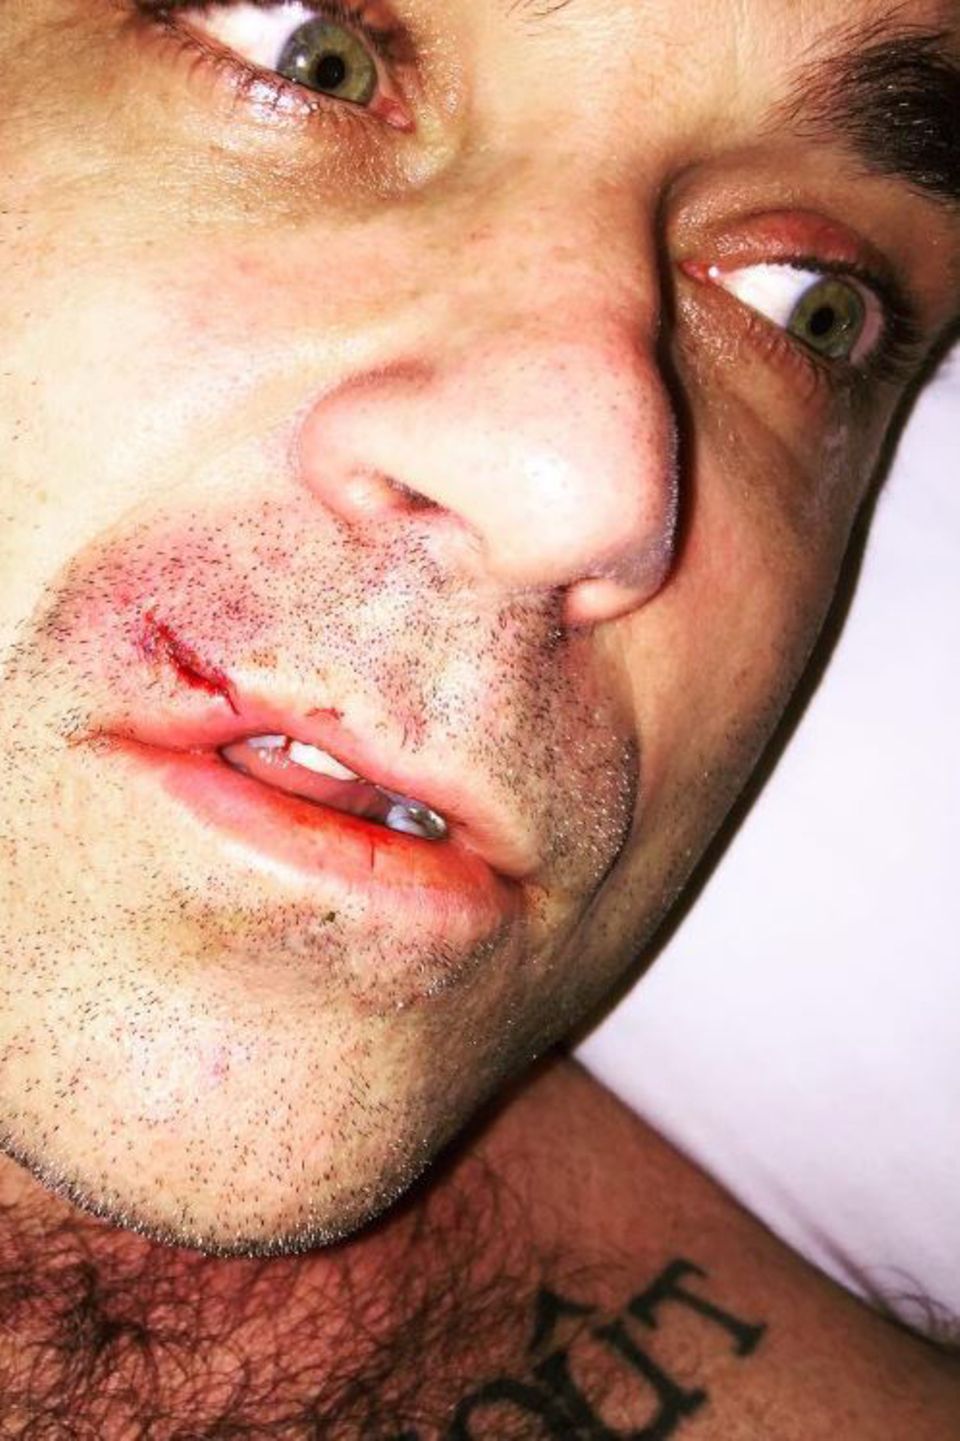 Januar 2017 Nein, es ist nicht häusliche Gewalt. Robbie Williams hatte nur eine Auseinandersetzung mit seinem Computer gehabt und der Computer hat gewonnen. Die Verletzung trägt er natürlich mit Würde. 